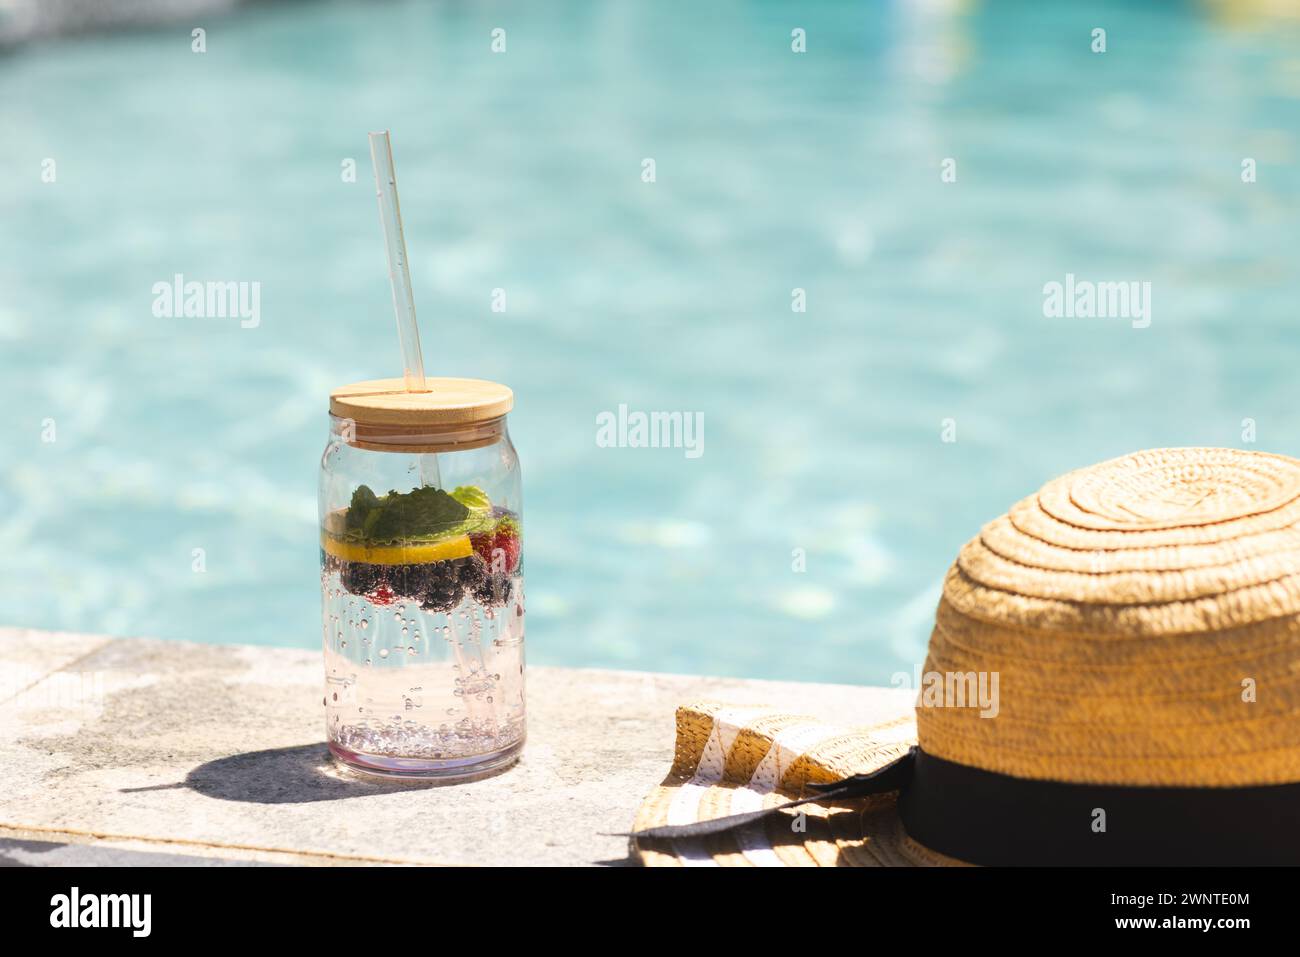 Un pot d'eau infusé de fruits se trouve à côté d'un chapeau de paille près d'une piscine Banque D'Images